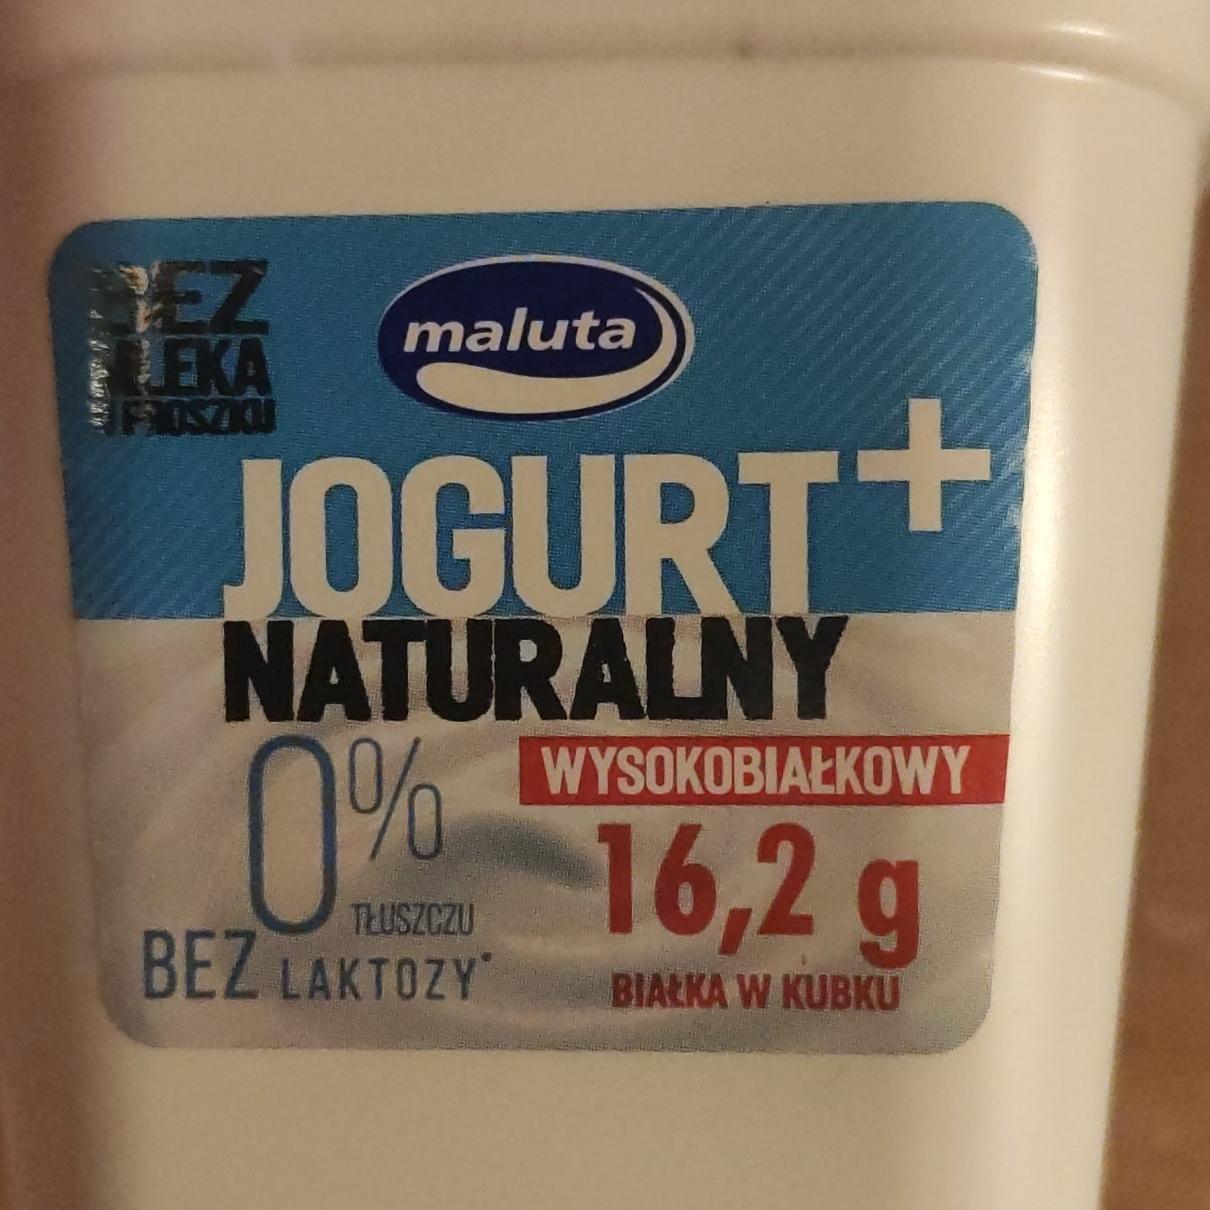 Zdjęcia - Jogurt naturalny wysokobiałkowy 0 % tłuszczu Maluta